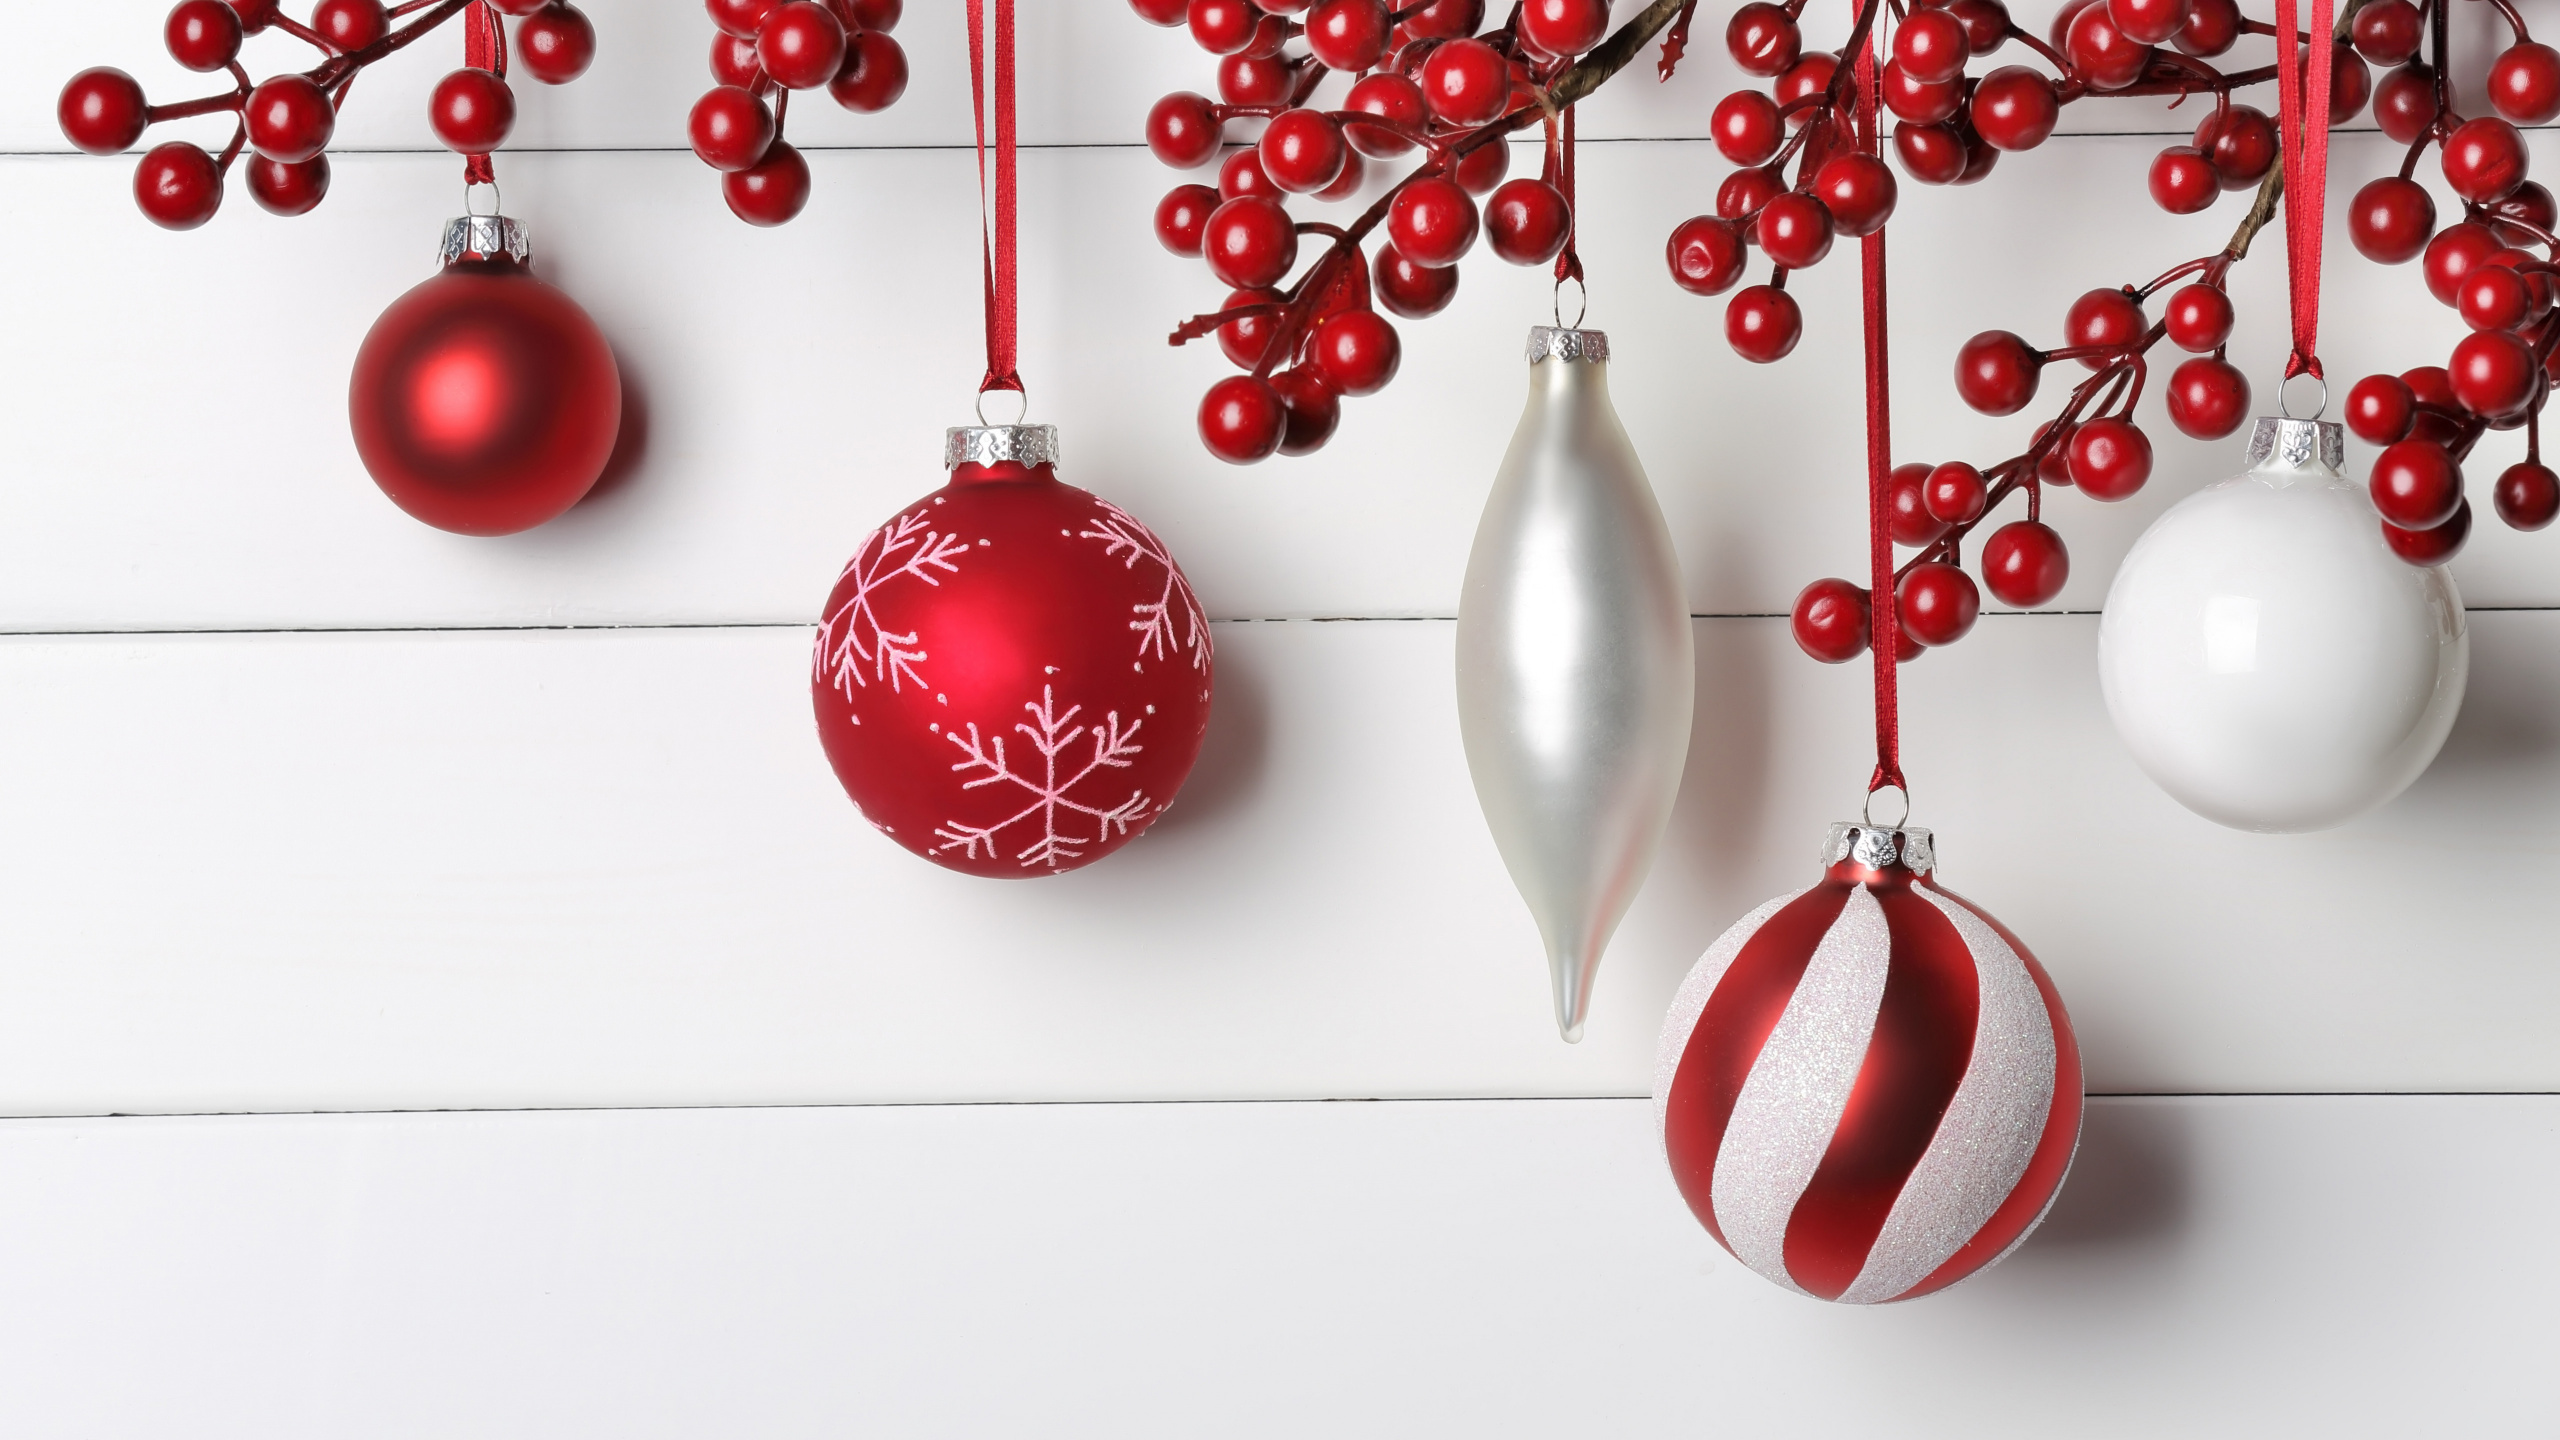 圣诞节那天, 圣诞节的装饰品, 圣诞装饰, 新的一年, 红色的 壁纸 2560x1440 允许